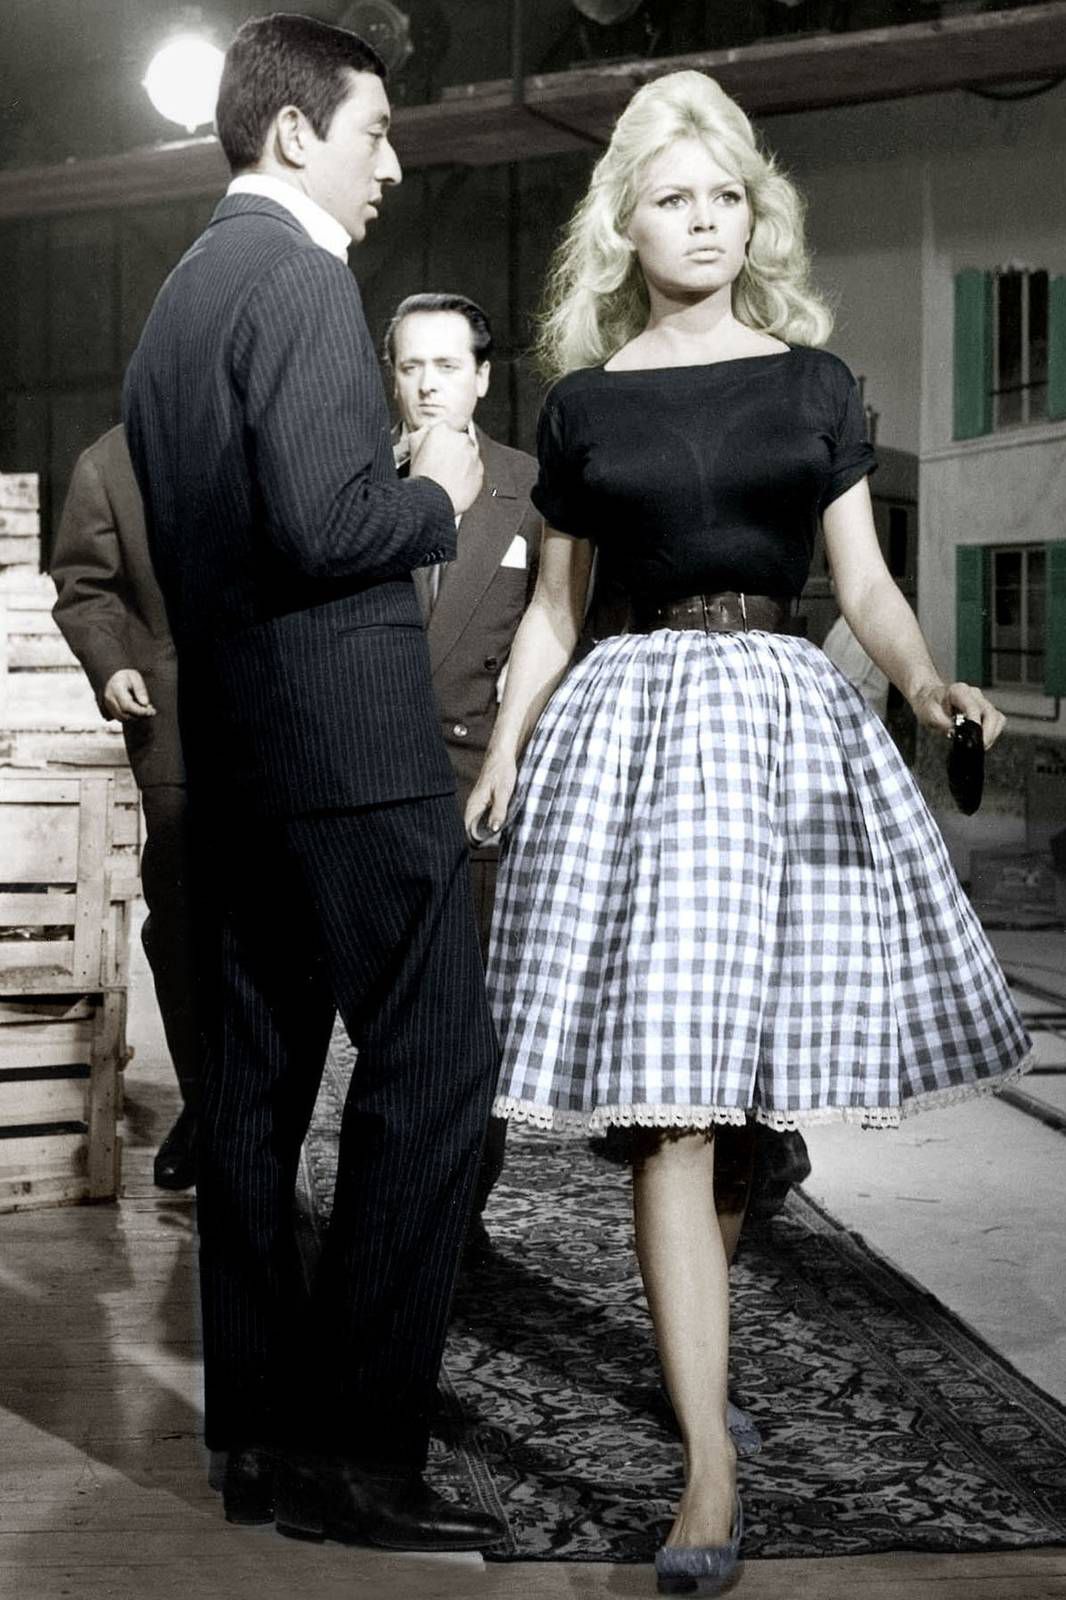 L'histoire de la jupe vichy de Brigitte Bardot dans “Voulez-vous danser  avec moi ?” - Brigitte Bardot for ever...